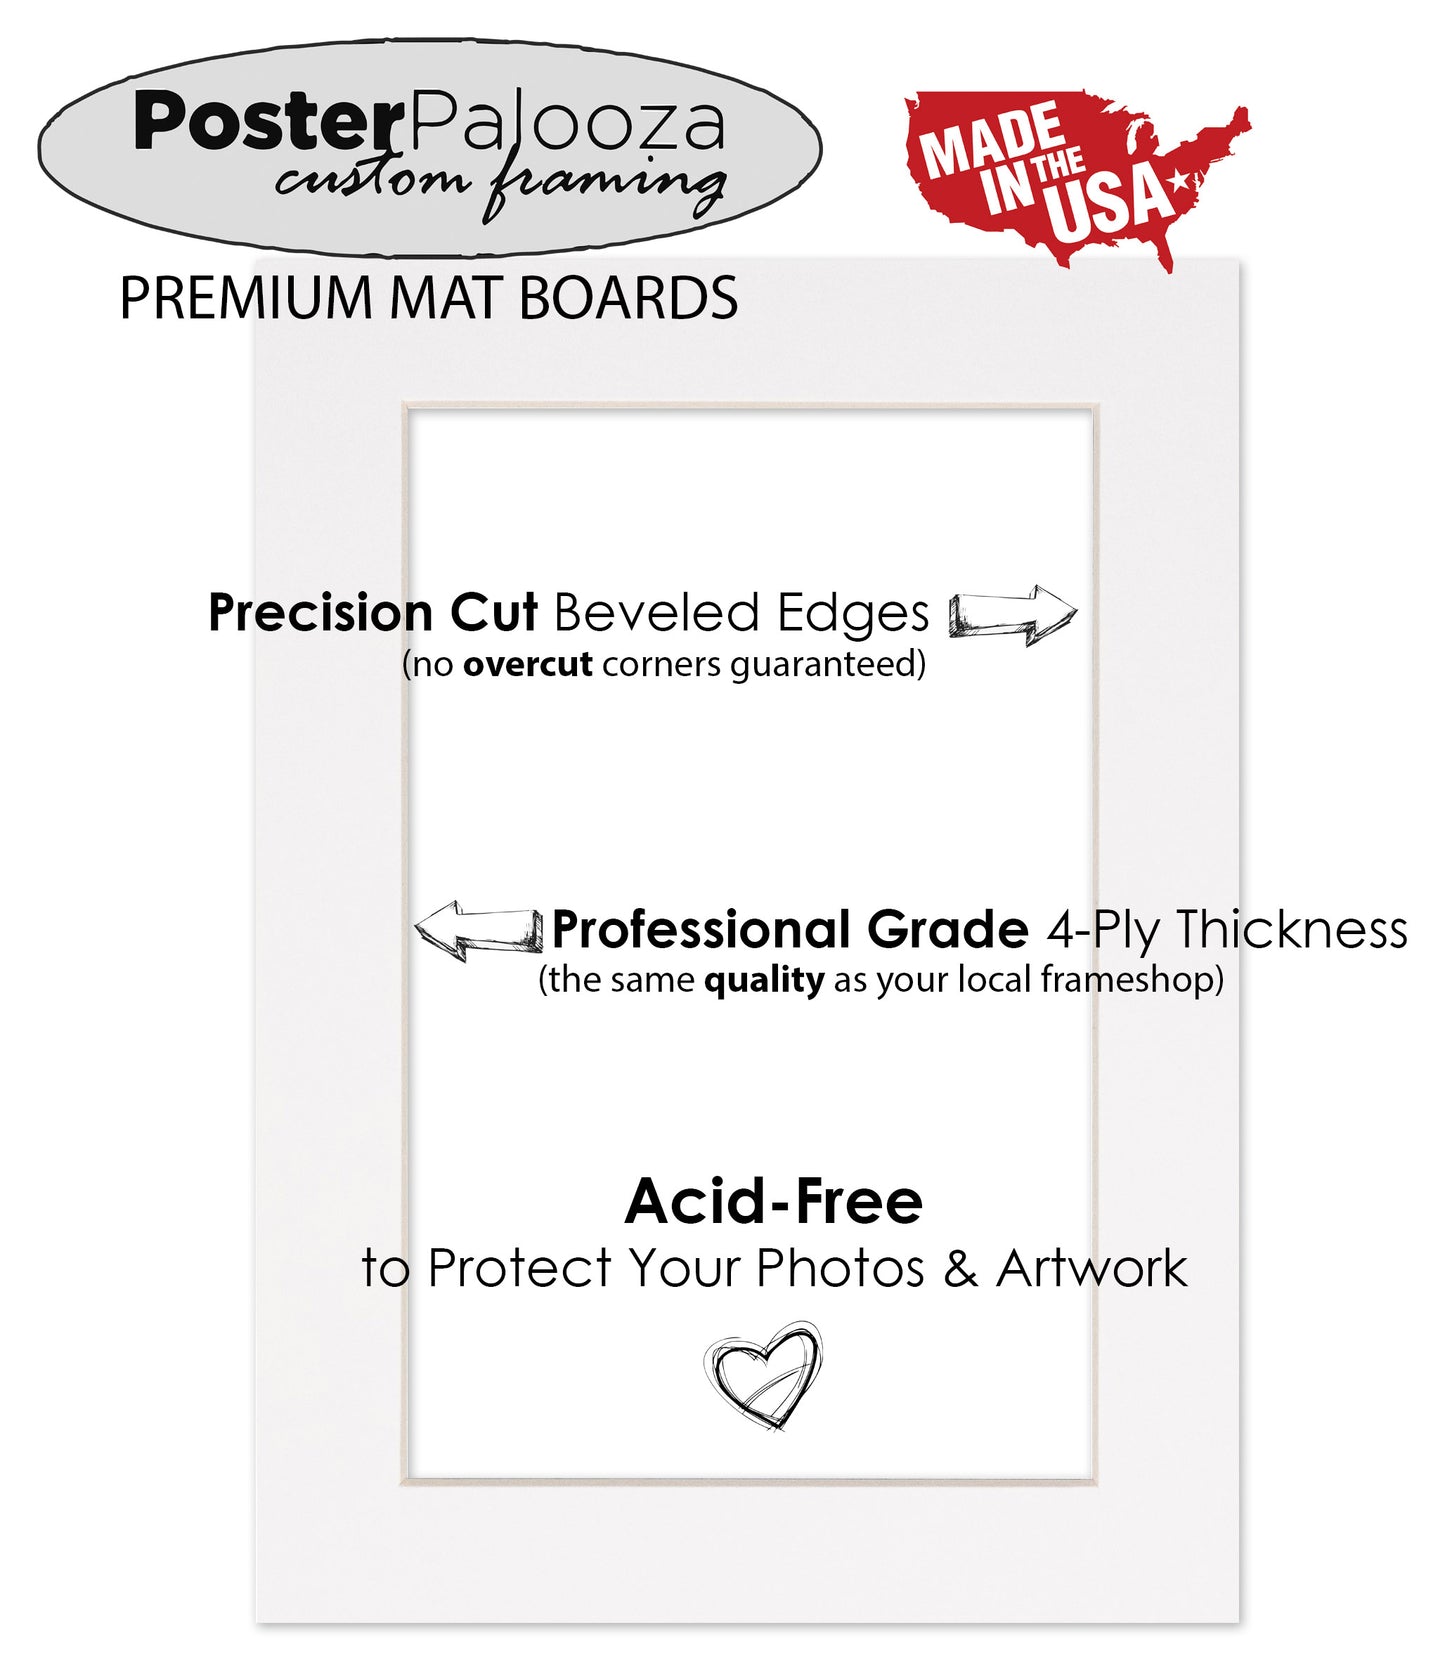 Pack of 10 Textured Cream Precut Acid-Free Matboards